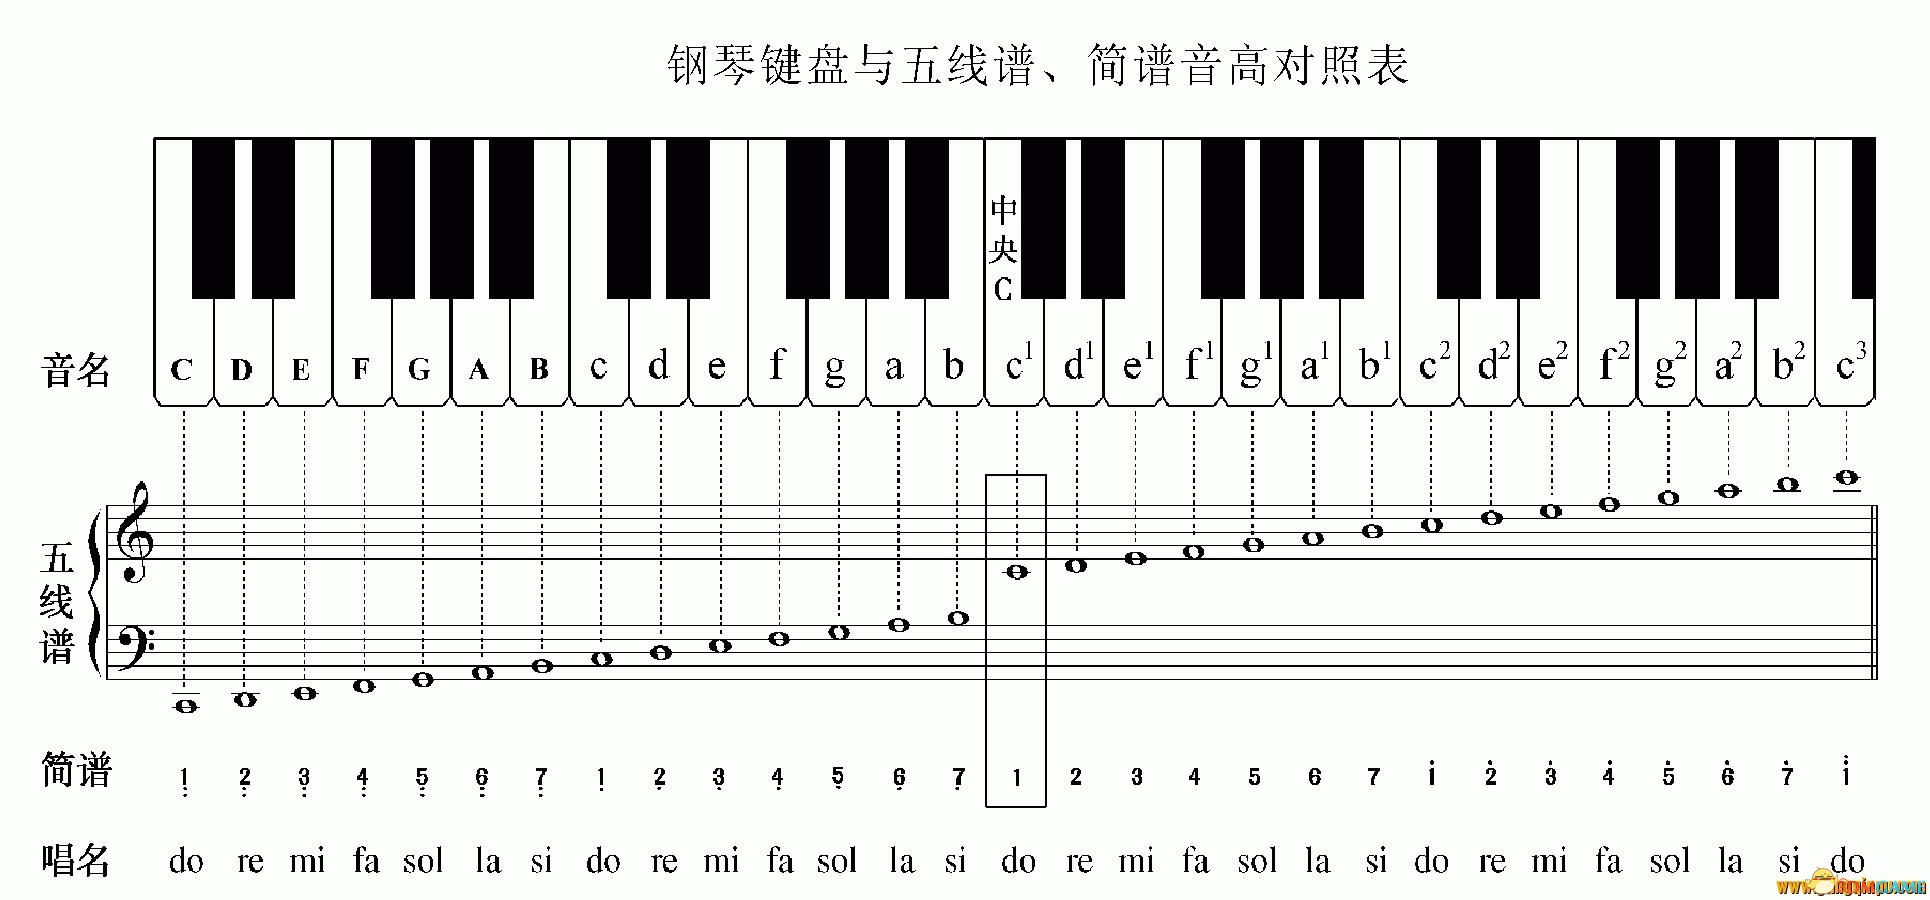 这是钢琴谱的高音谱表部分(也称为g谱表),根据基础乐理中的描述